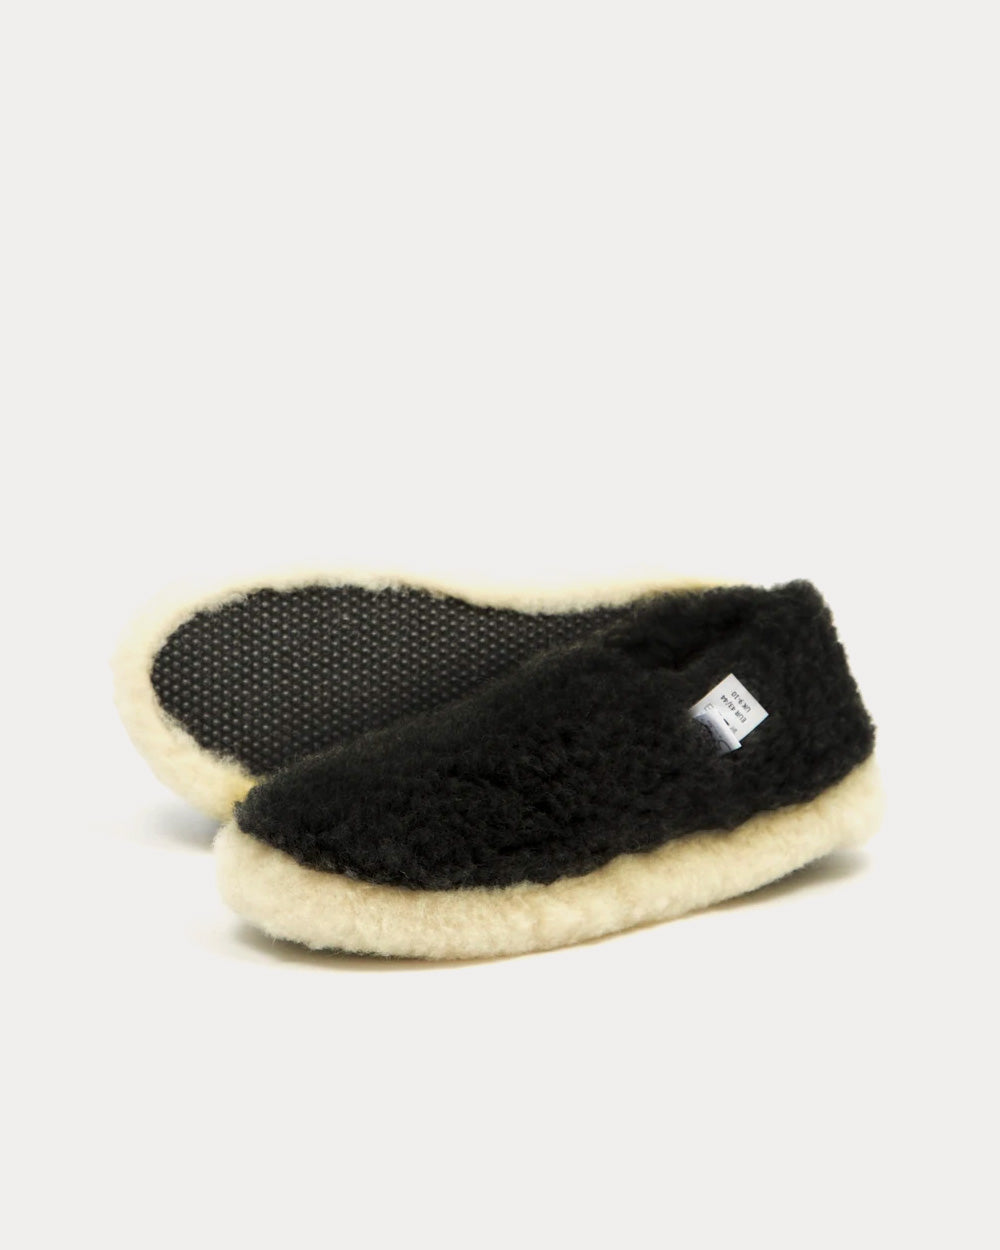 Yoko Wool - Siberian Wool Black Slip Ons